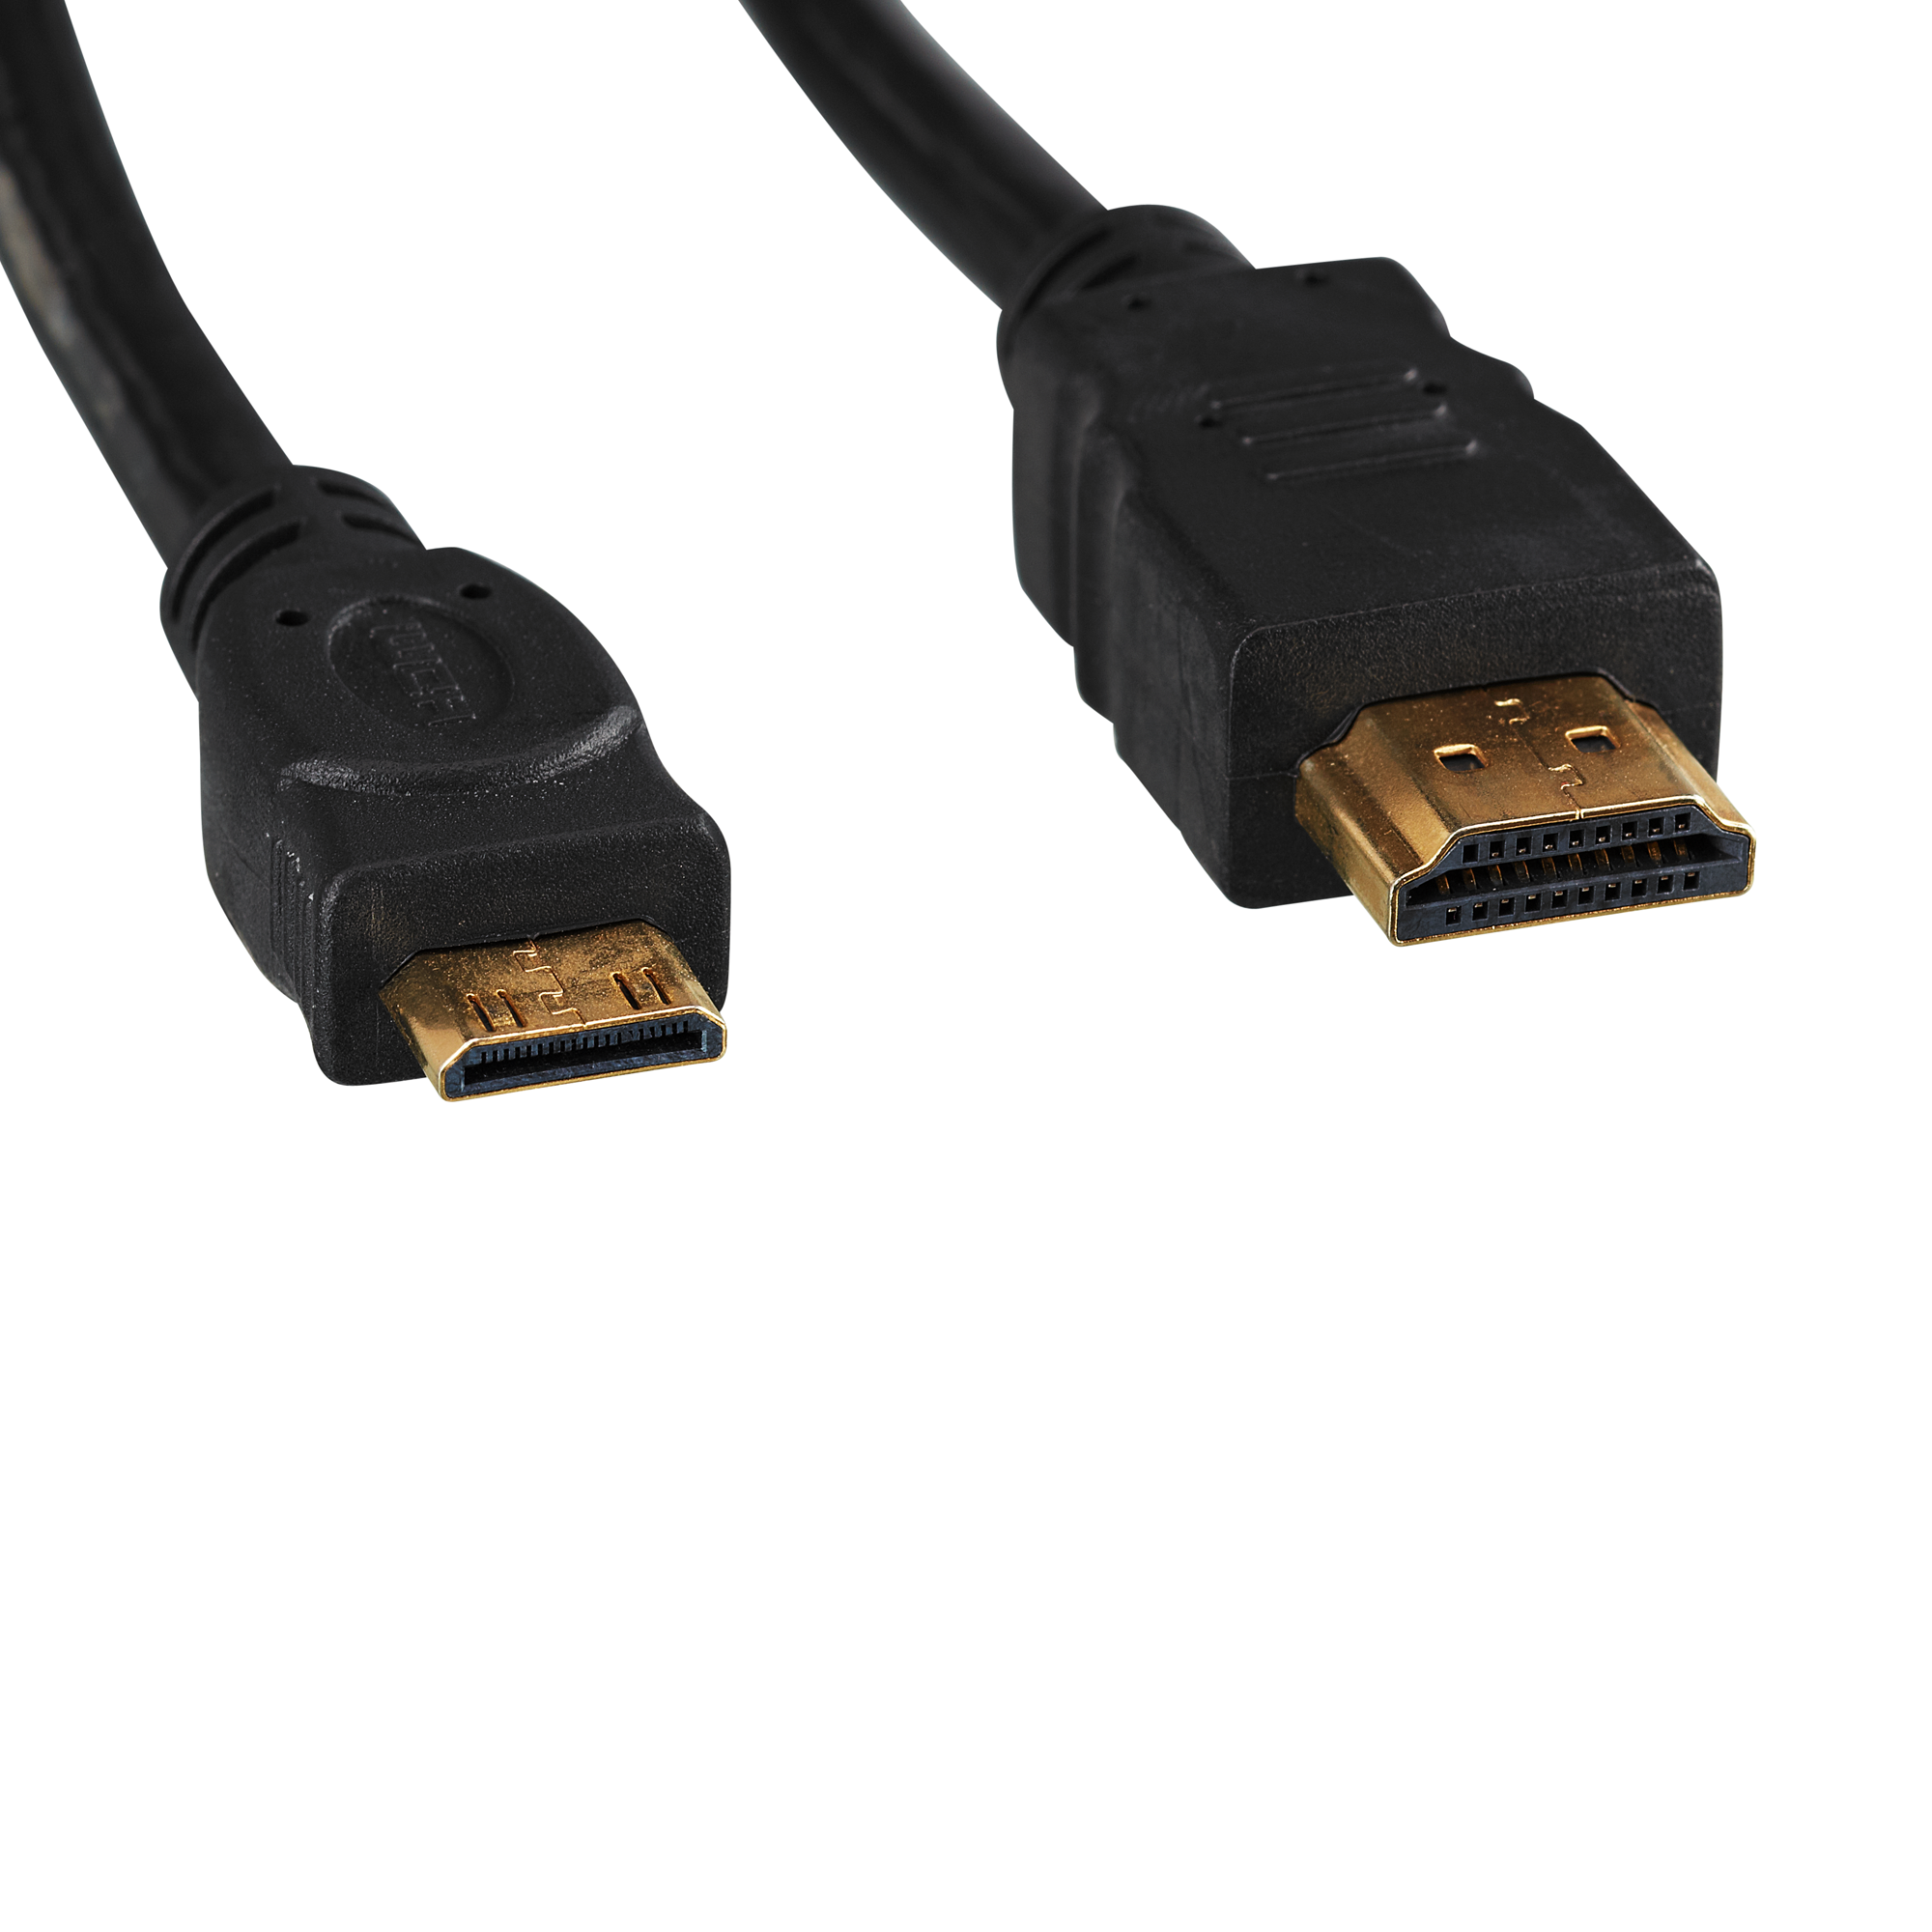 HDMI-Kabel mit Ministecker schwarz 1,5 m + product picture